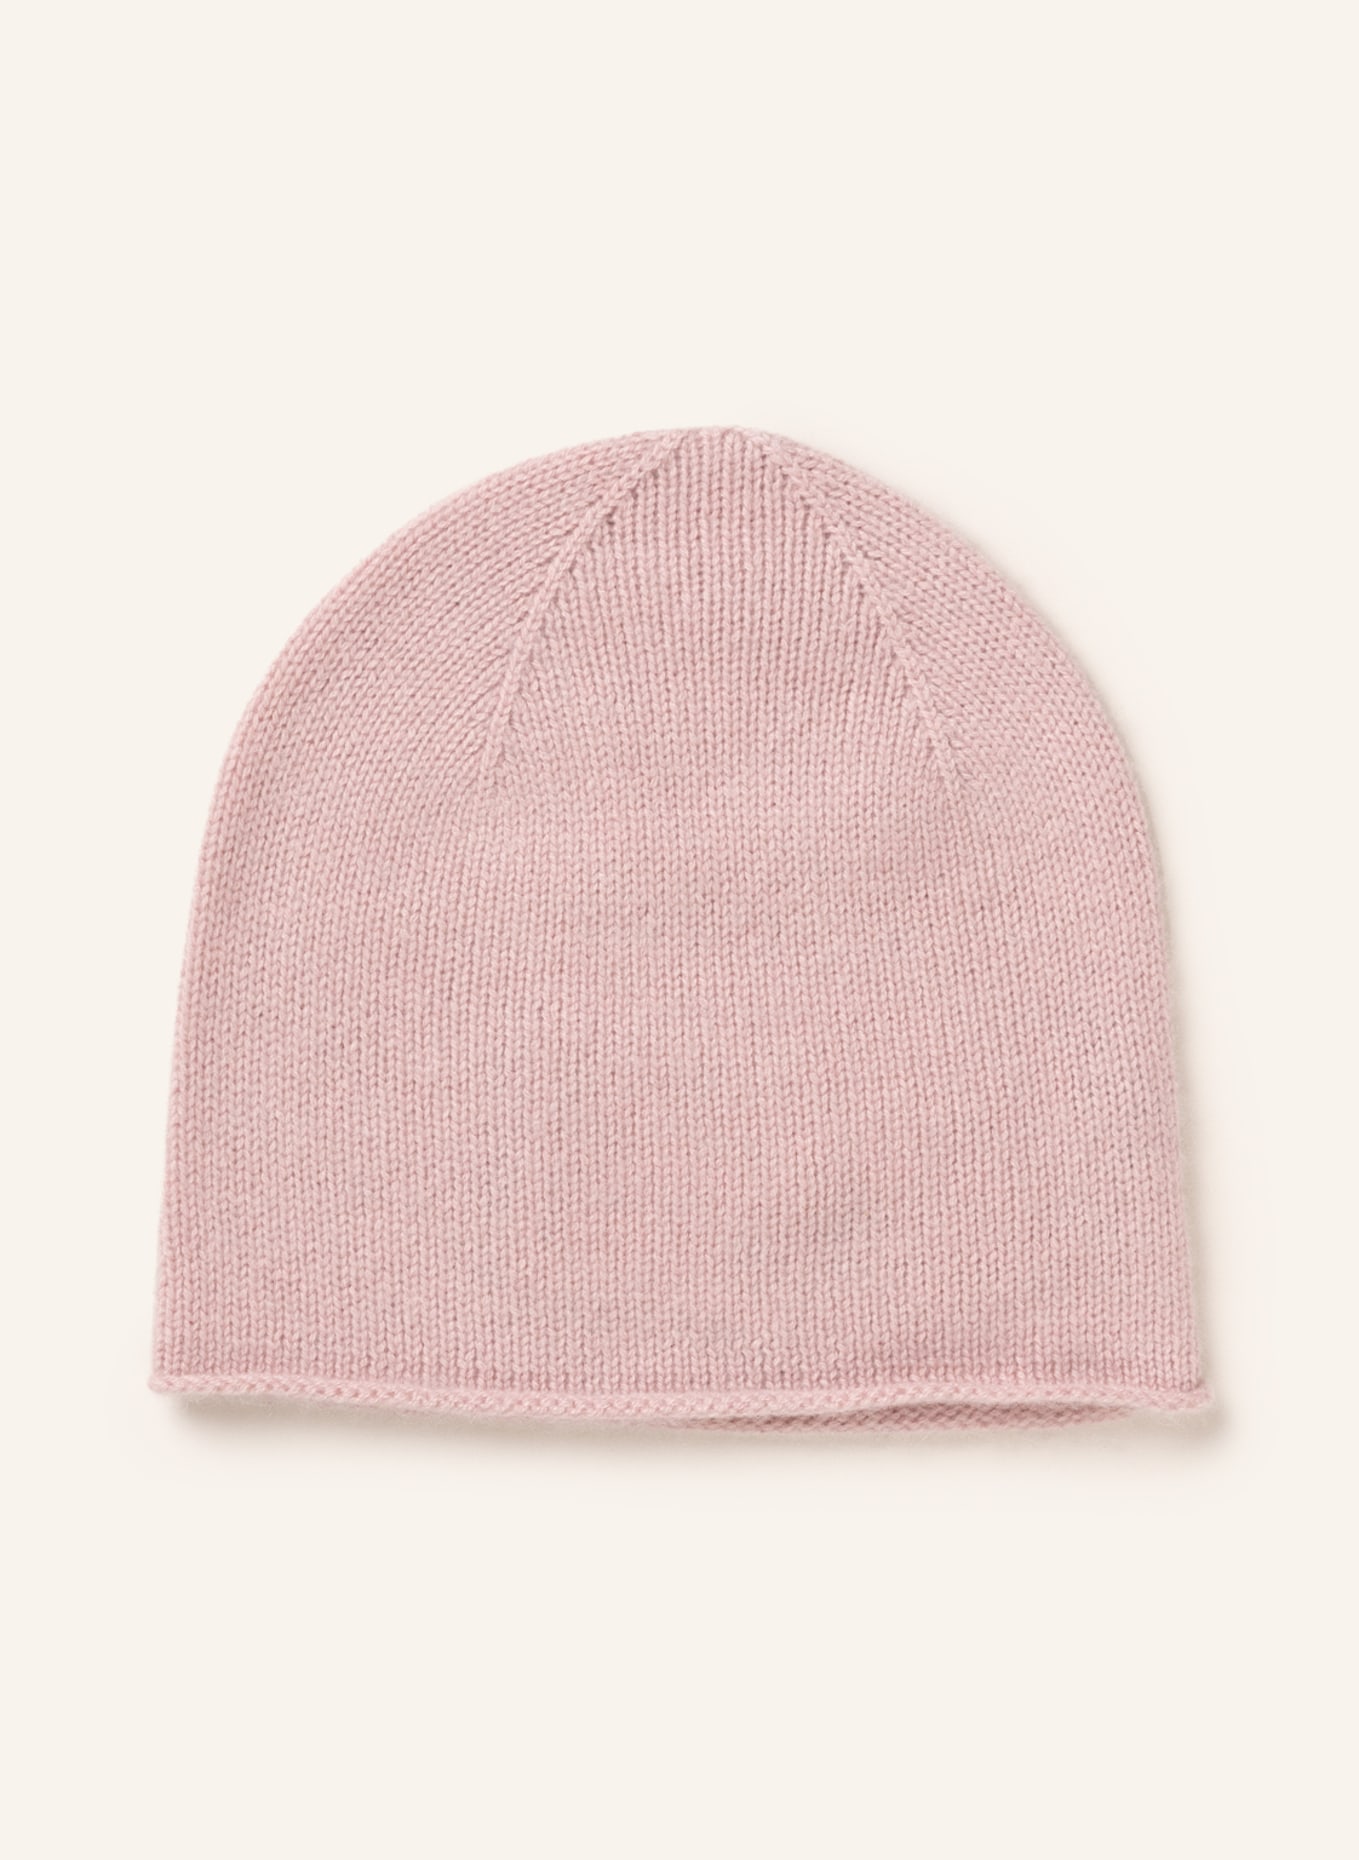 S.MARLON Cashmere hat, Color: ROSE (Image 1)